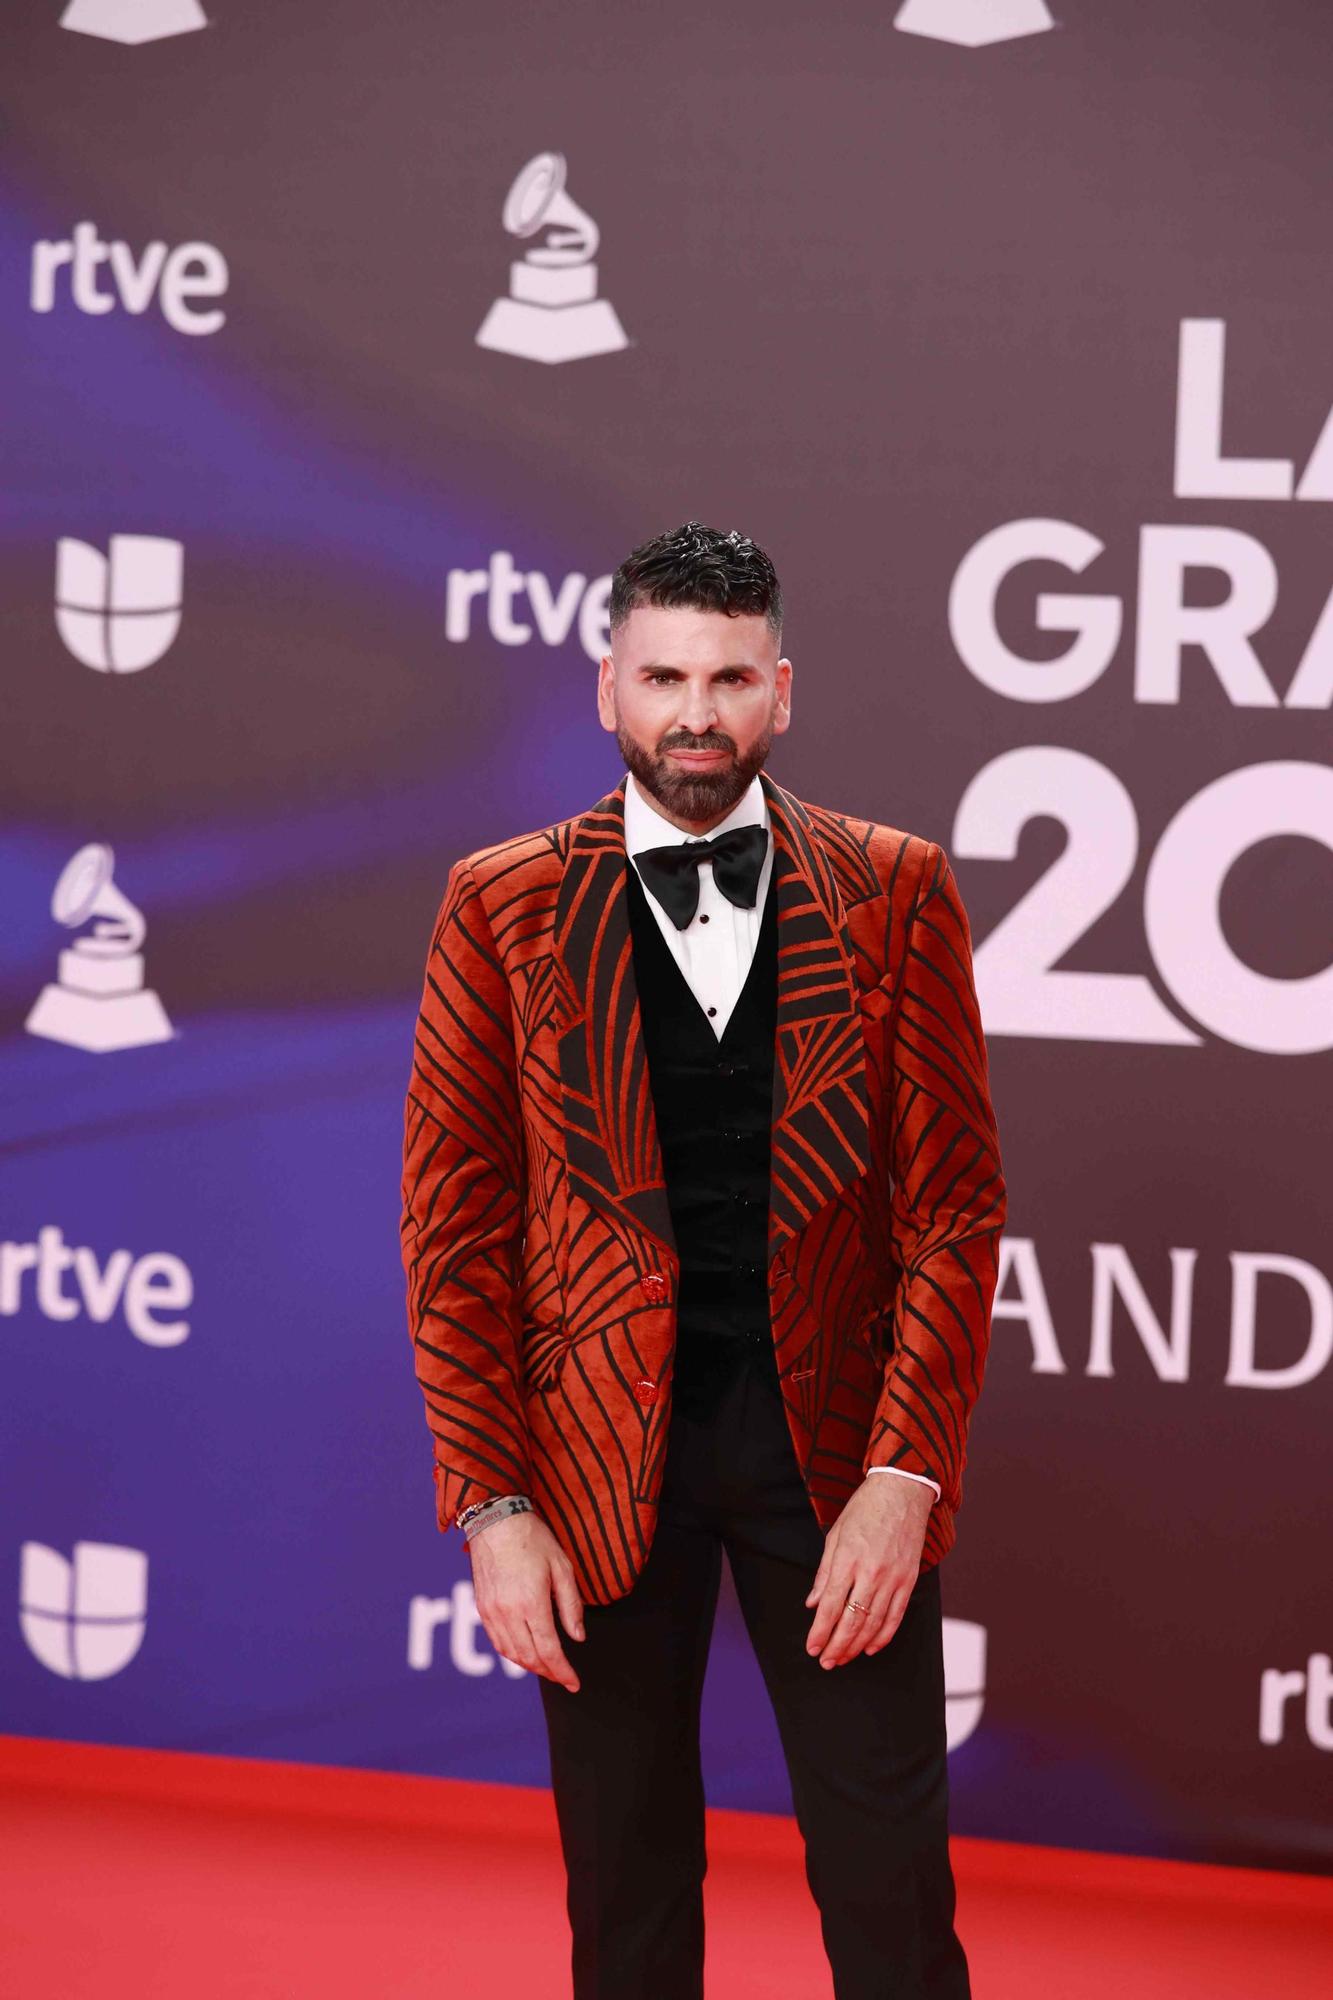 La catifa vermella dels Latin Grammy 2023